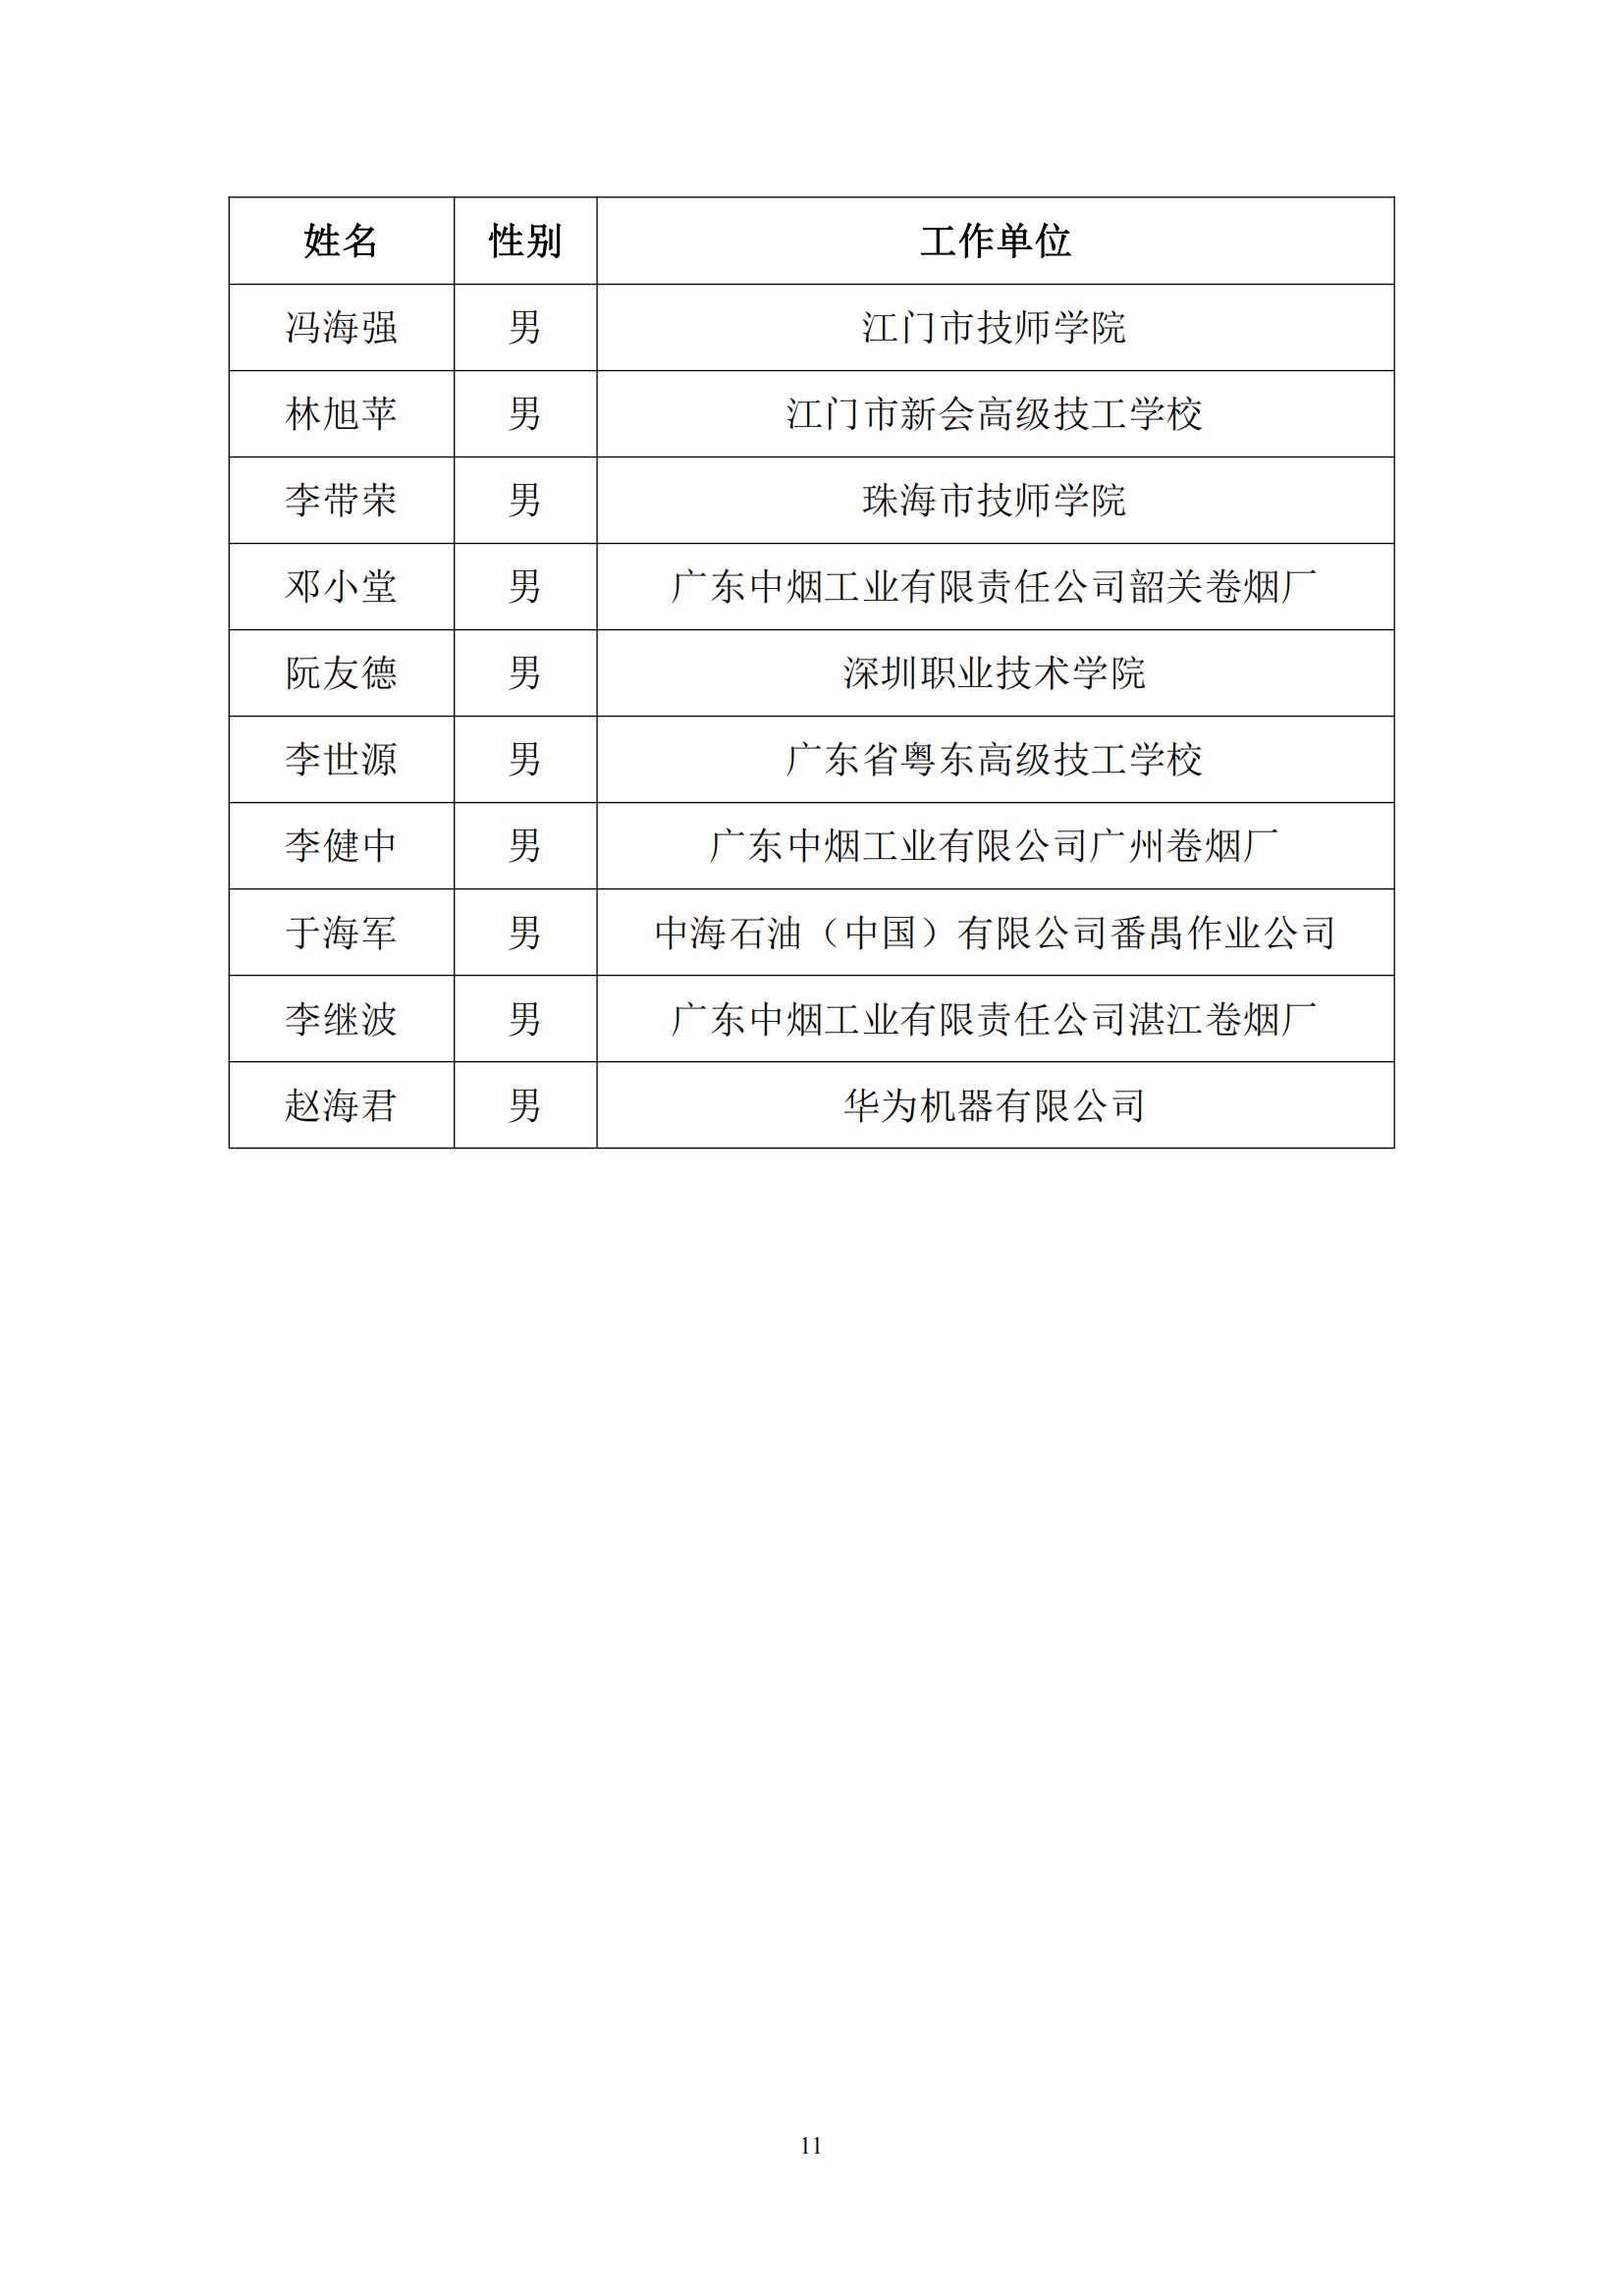 2016 年中国技能大赛——广东省可编程序控制系统设计师（工业机器人技术应用）职业技能竞赛_10.jpg